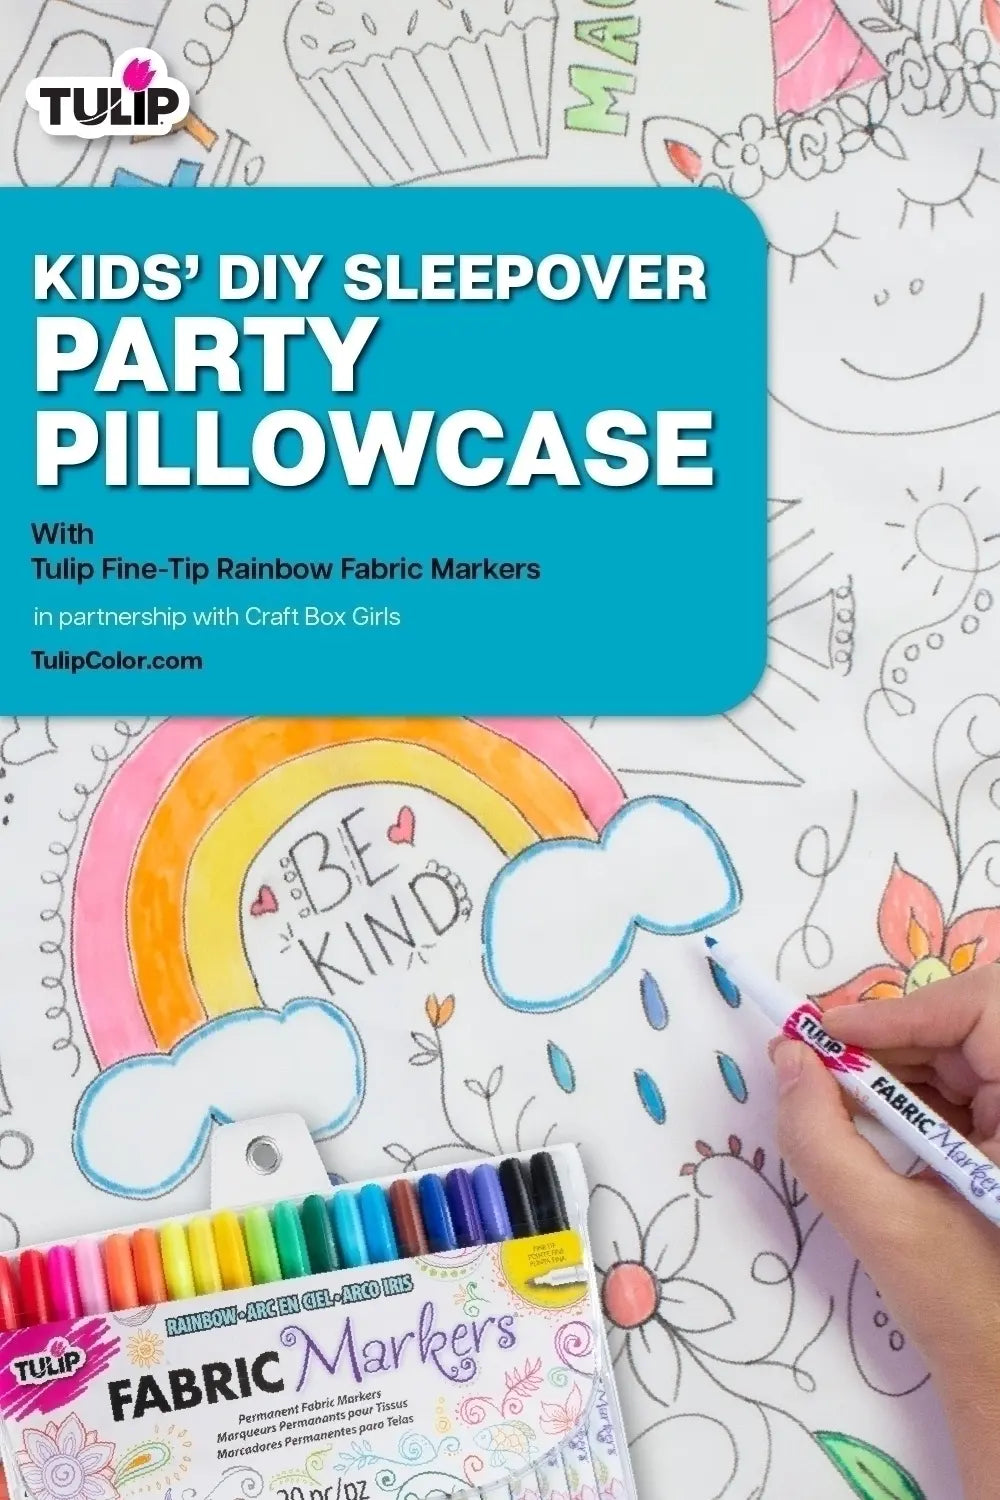 https://tulipcolor.com/cdn/shop/files/Kids_DIY_Sleepover_Party_Pillowcase.webp?v=1689077753